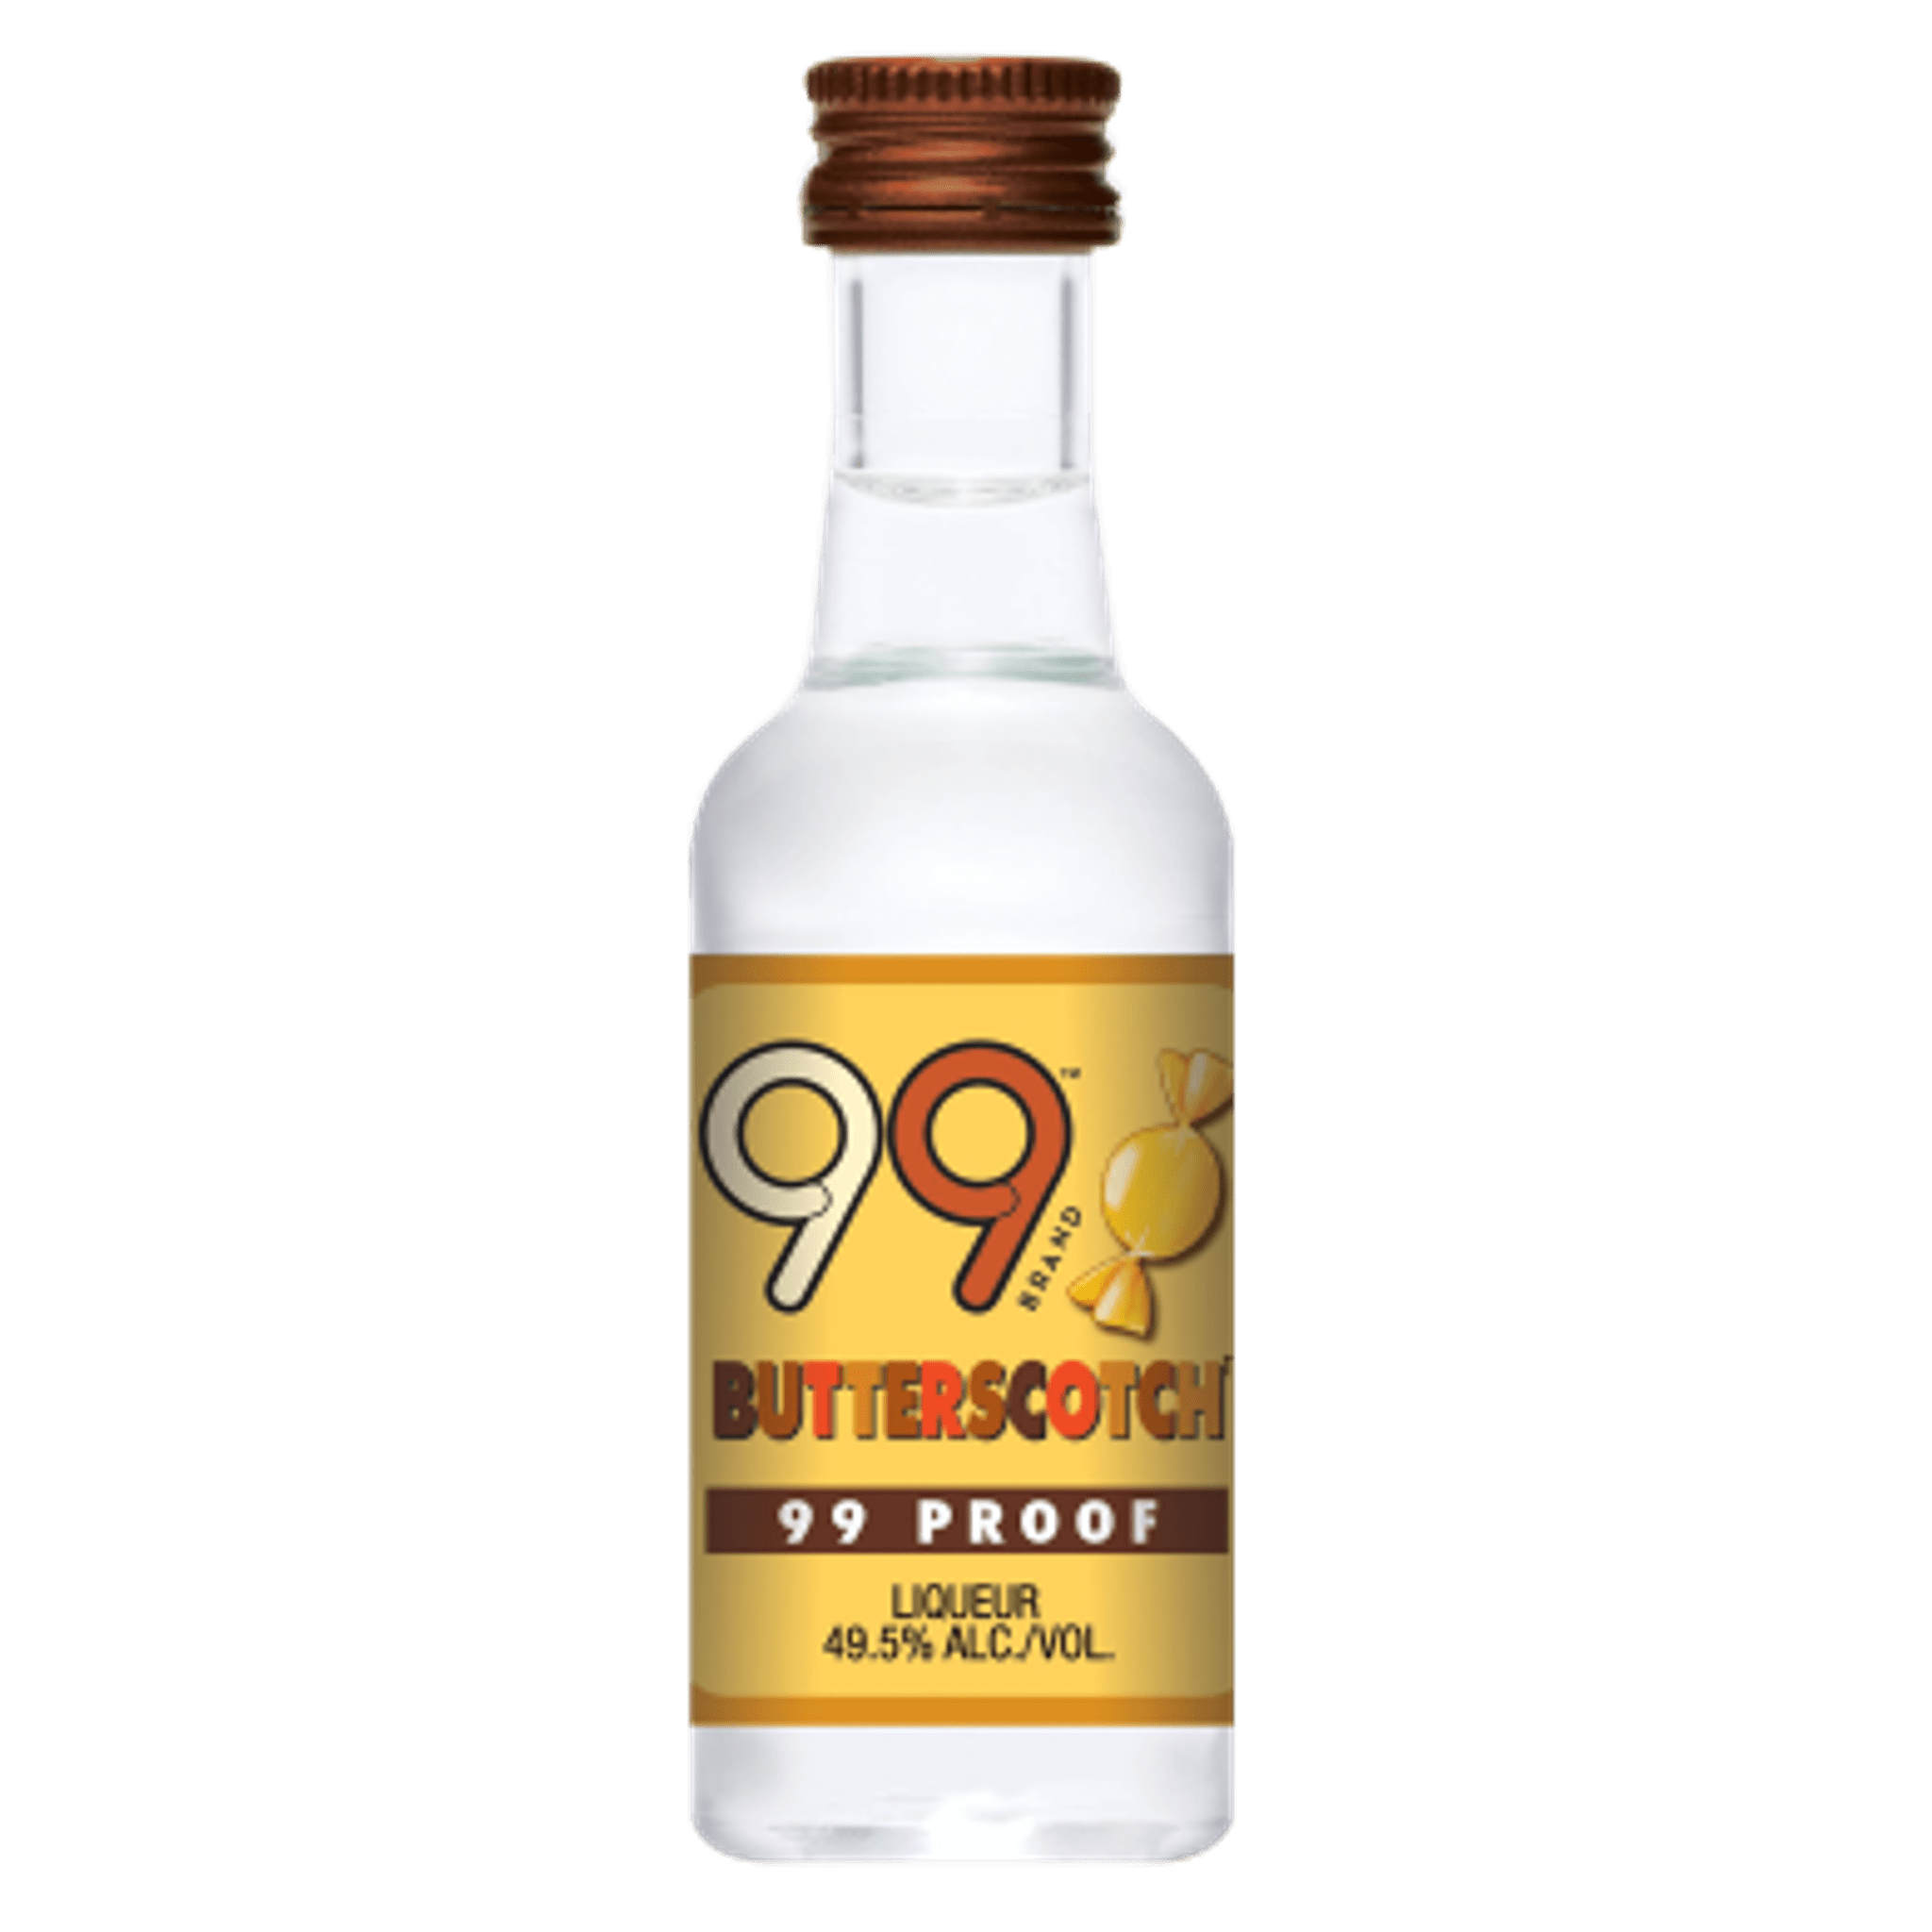 99 Brand – Butterscotch Schnapps 50mL